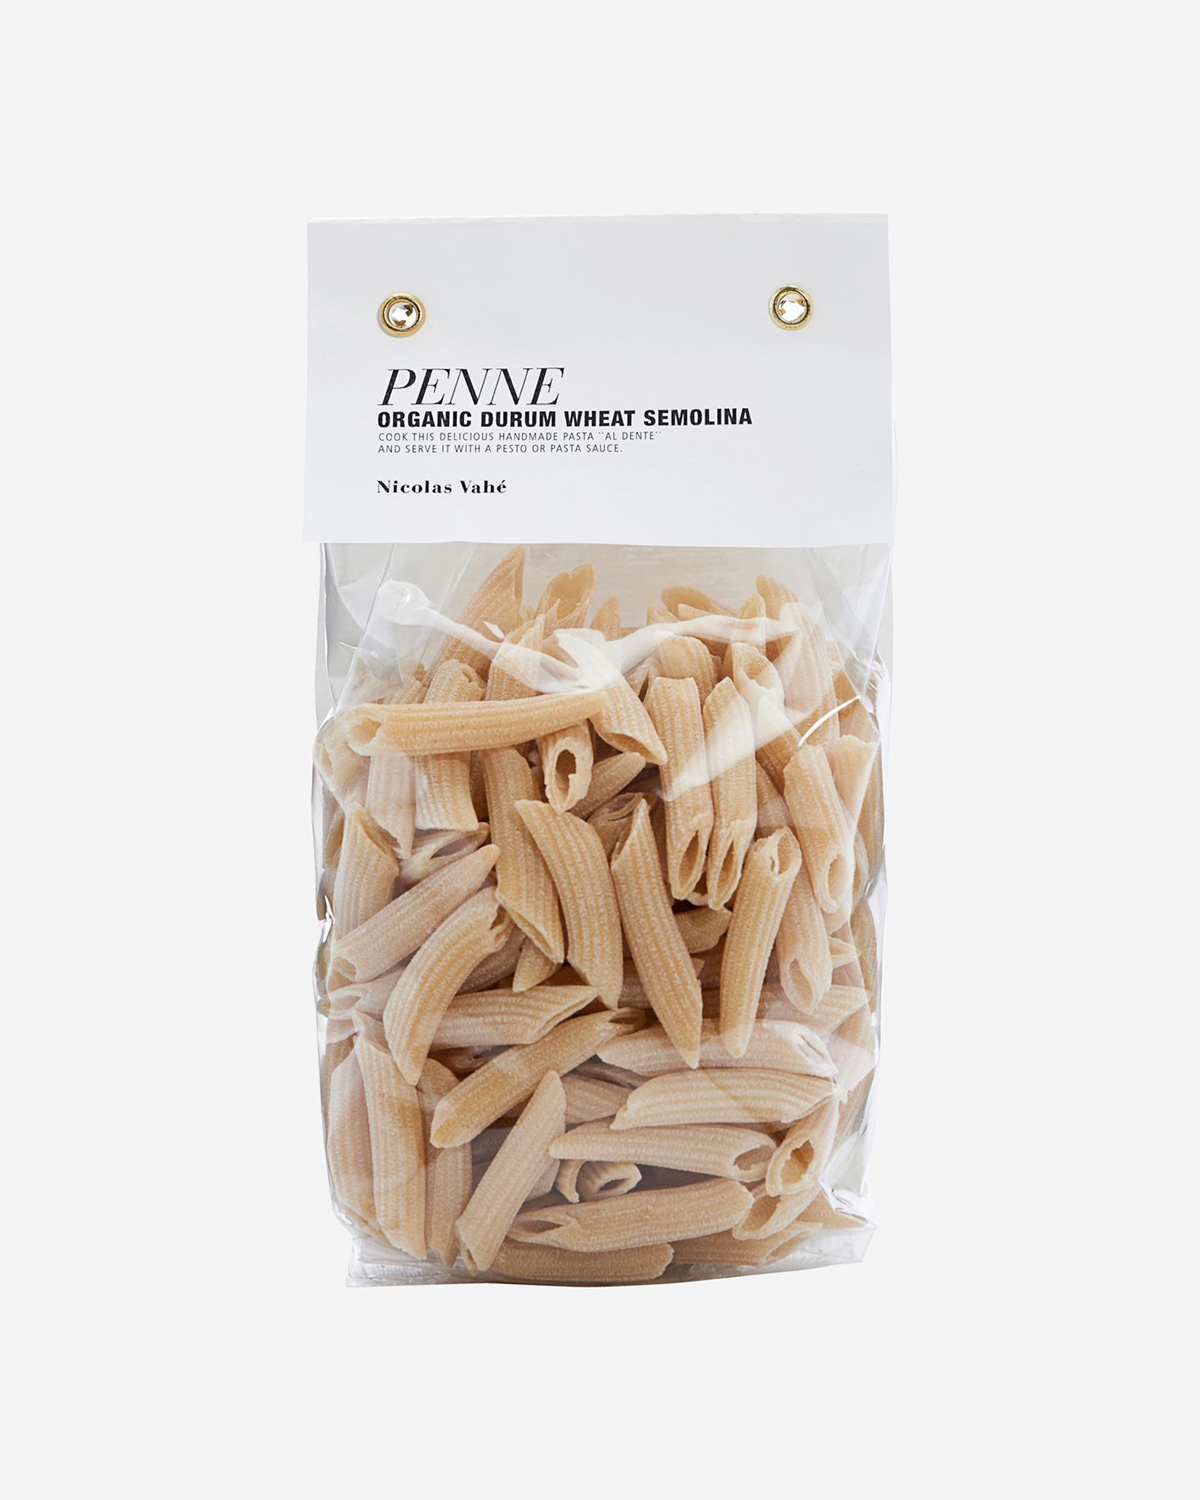 Penne - Organic Durum Wheat Semolina, 250 g.